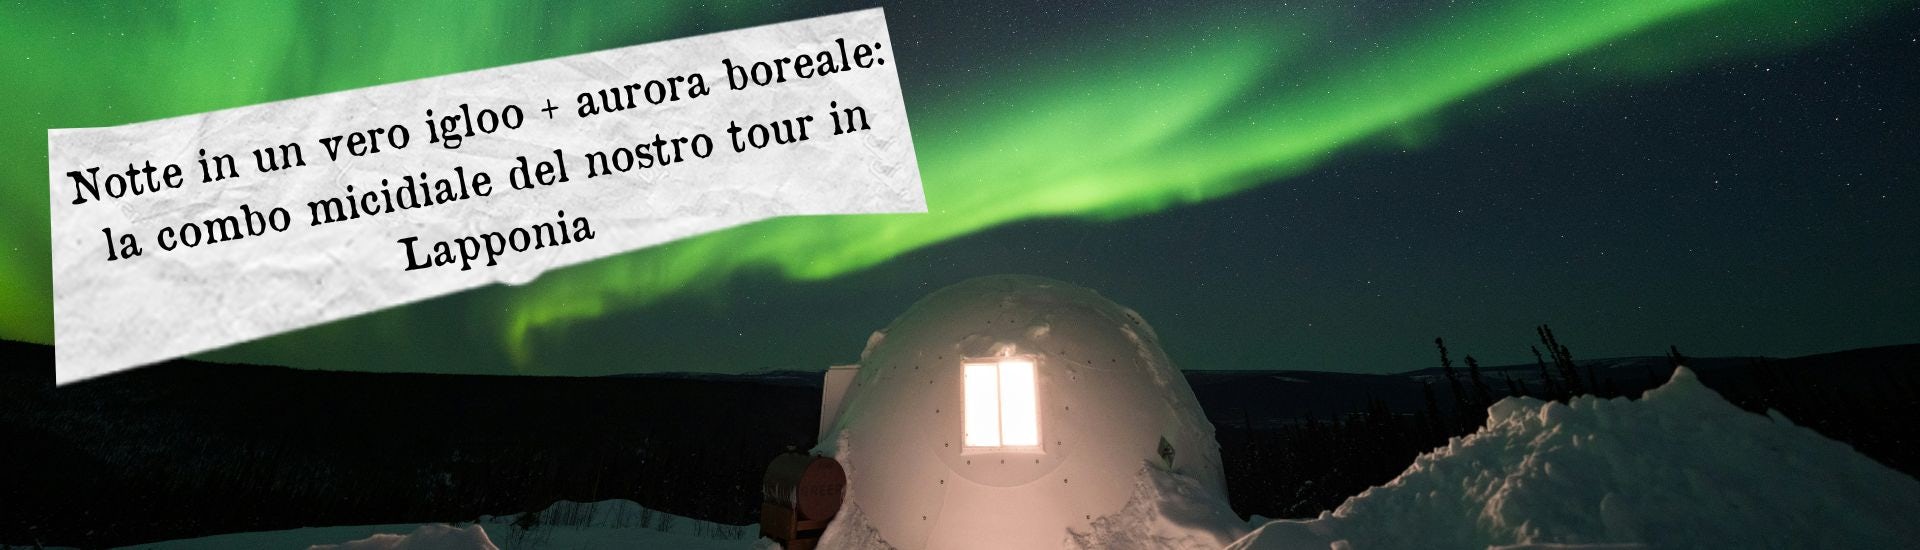 igloo lapponia aurora boreale larga